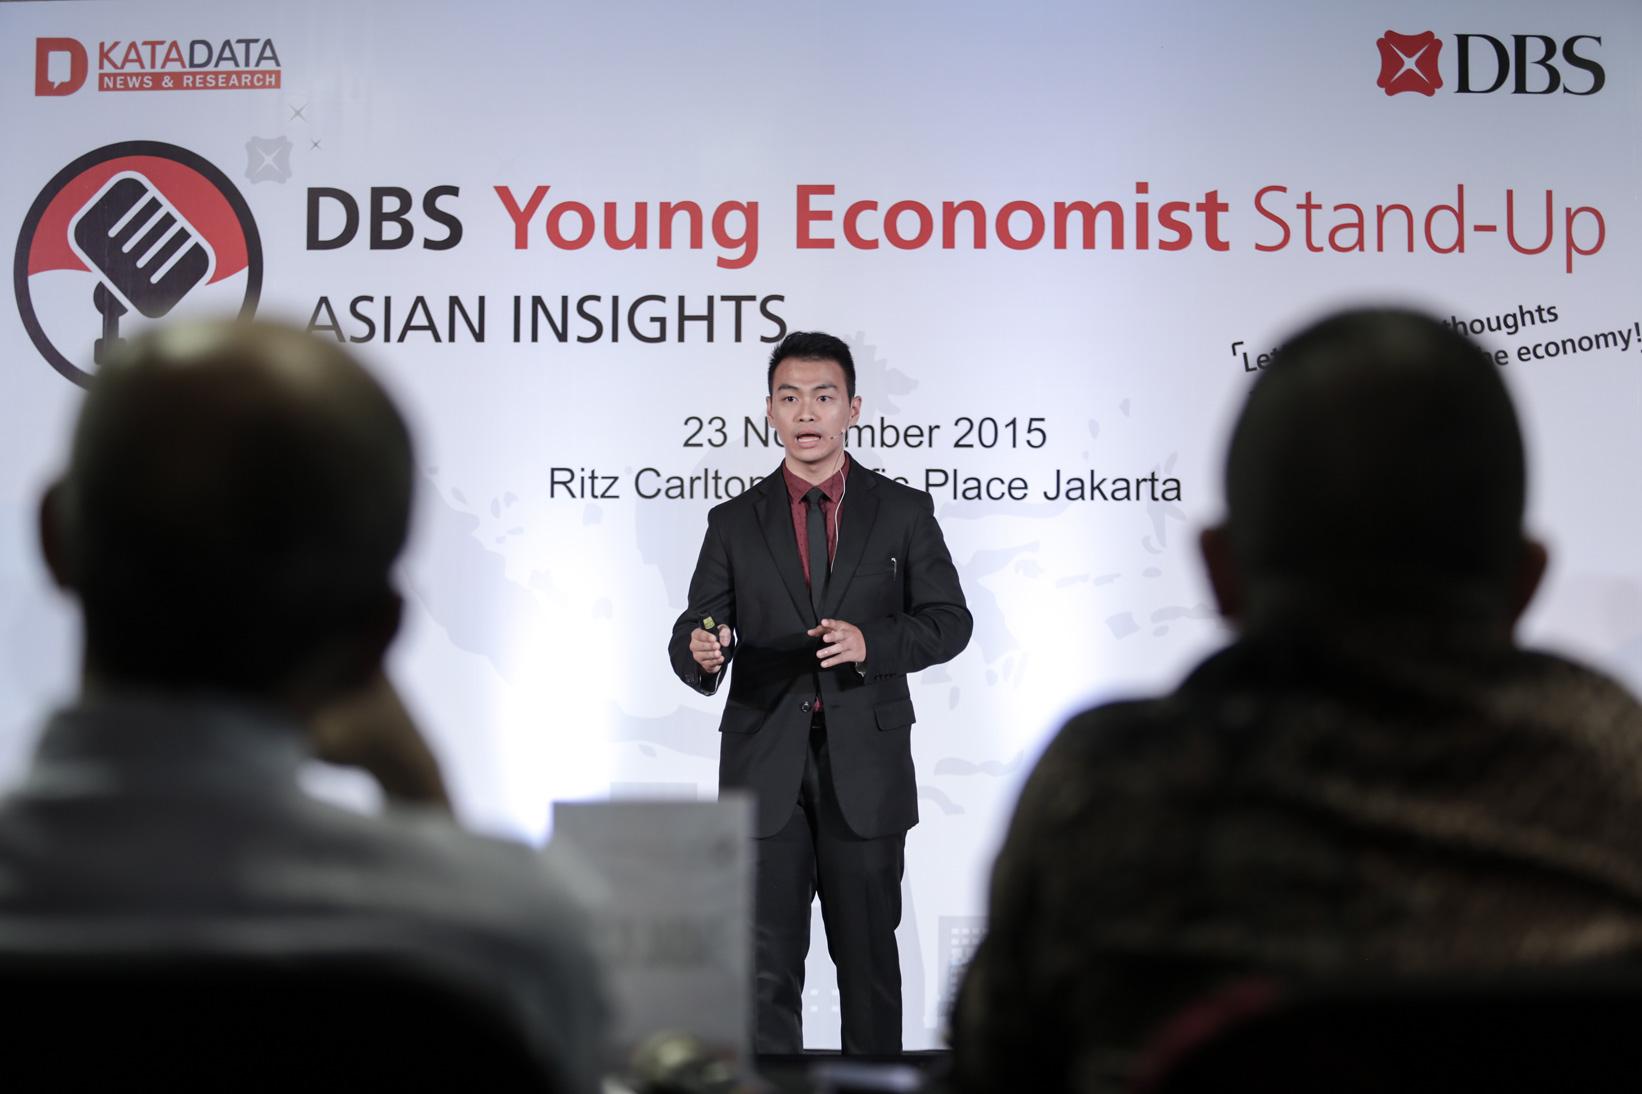 Peserta DBS Young Economist Stand-Up Matthew ErwinUniv. Parahyangan, Bandung mempresentasikan paparannya di hadapan juri yang terdiri dari Faisal Basri, Alanda Kaliza dan Gundy Cahyadi yang diadakan oleh Bank DBS bekerja sama dengan Katadata di Jakarta, Senin (23/11).